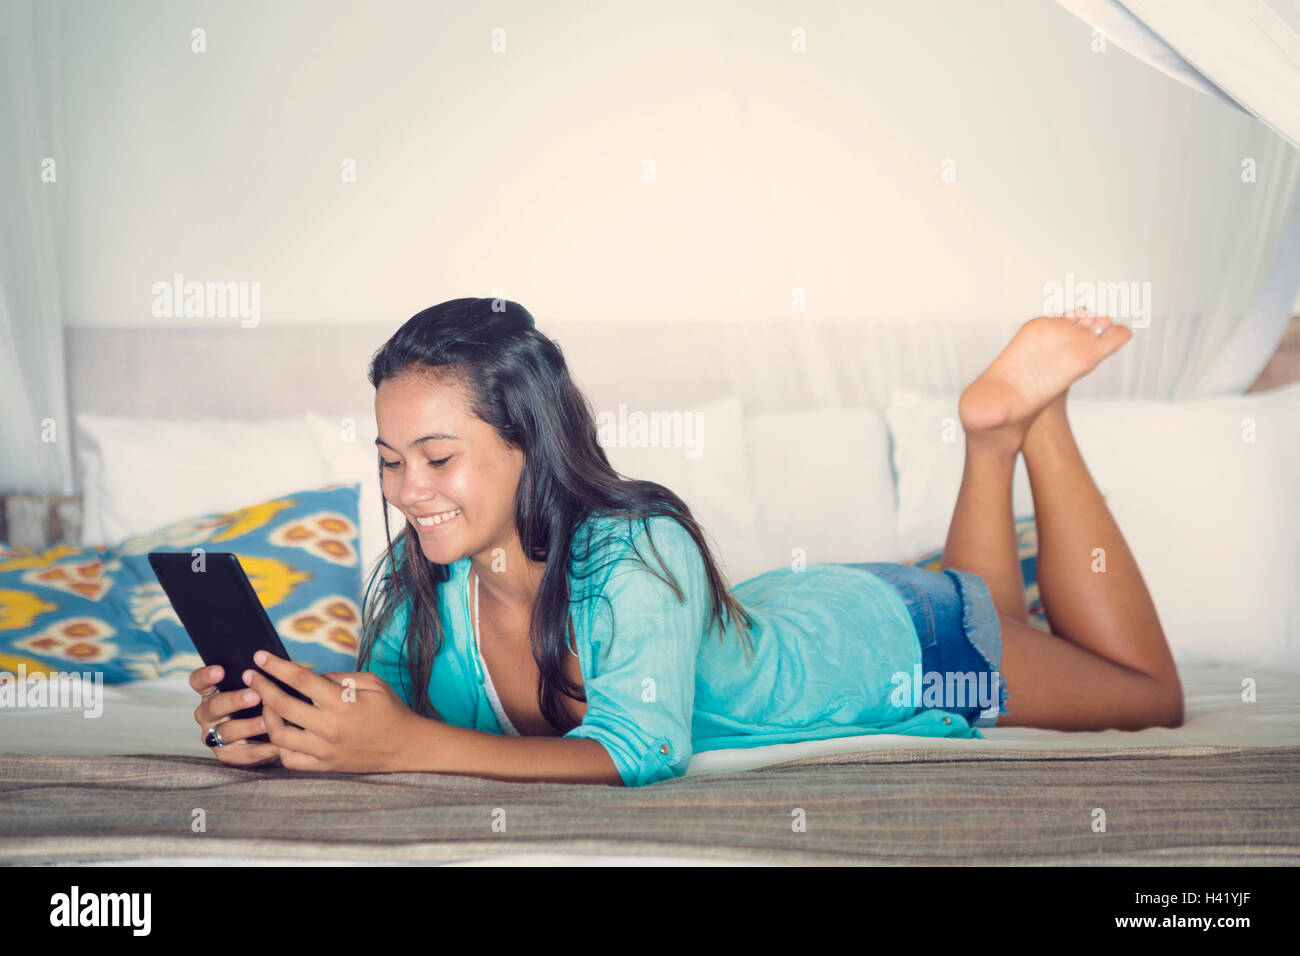 Razza mista ragazza posa sul letto la lettura digitale compressa Foto Stock